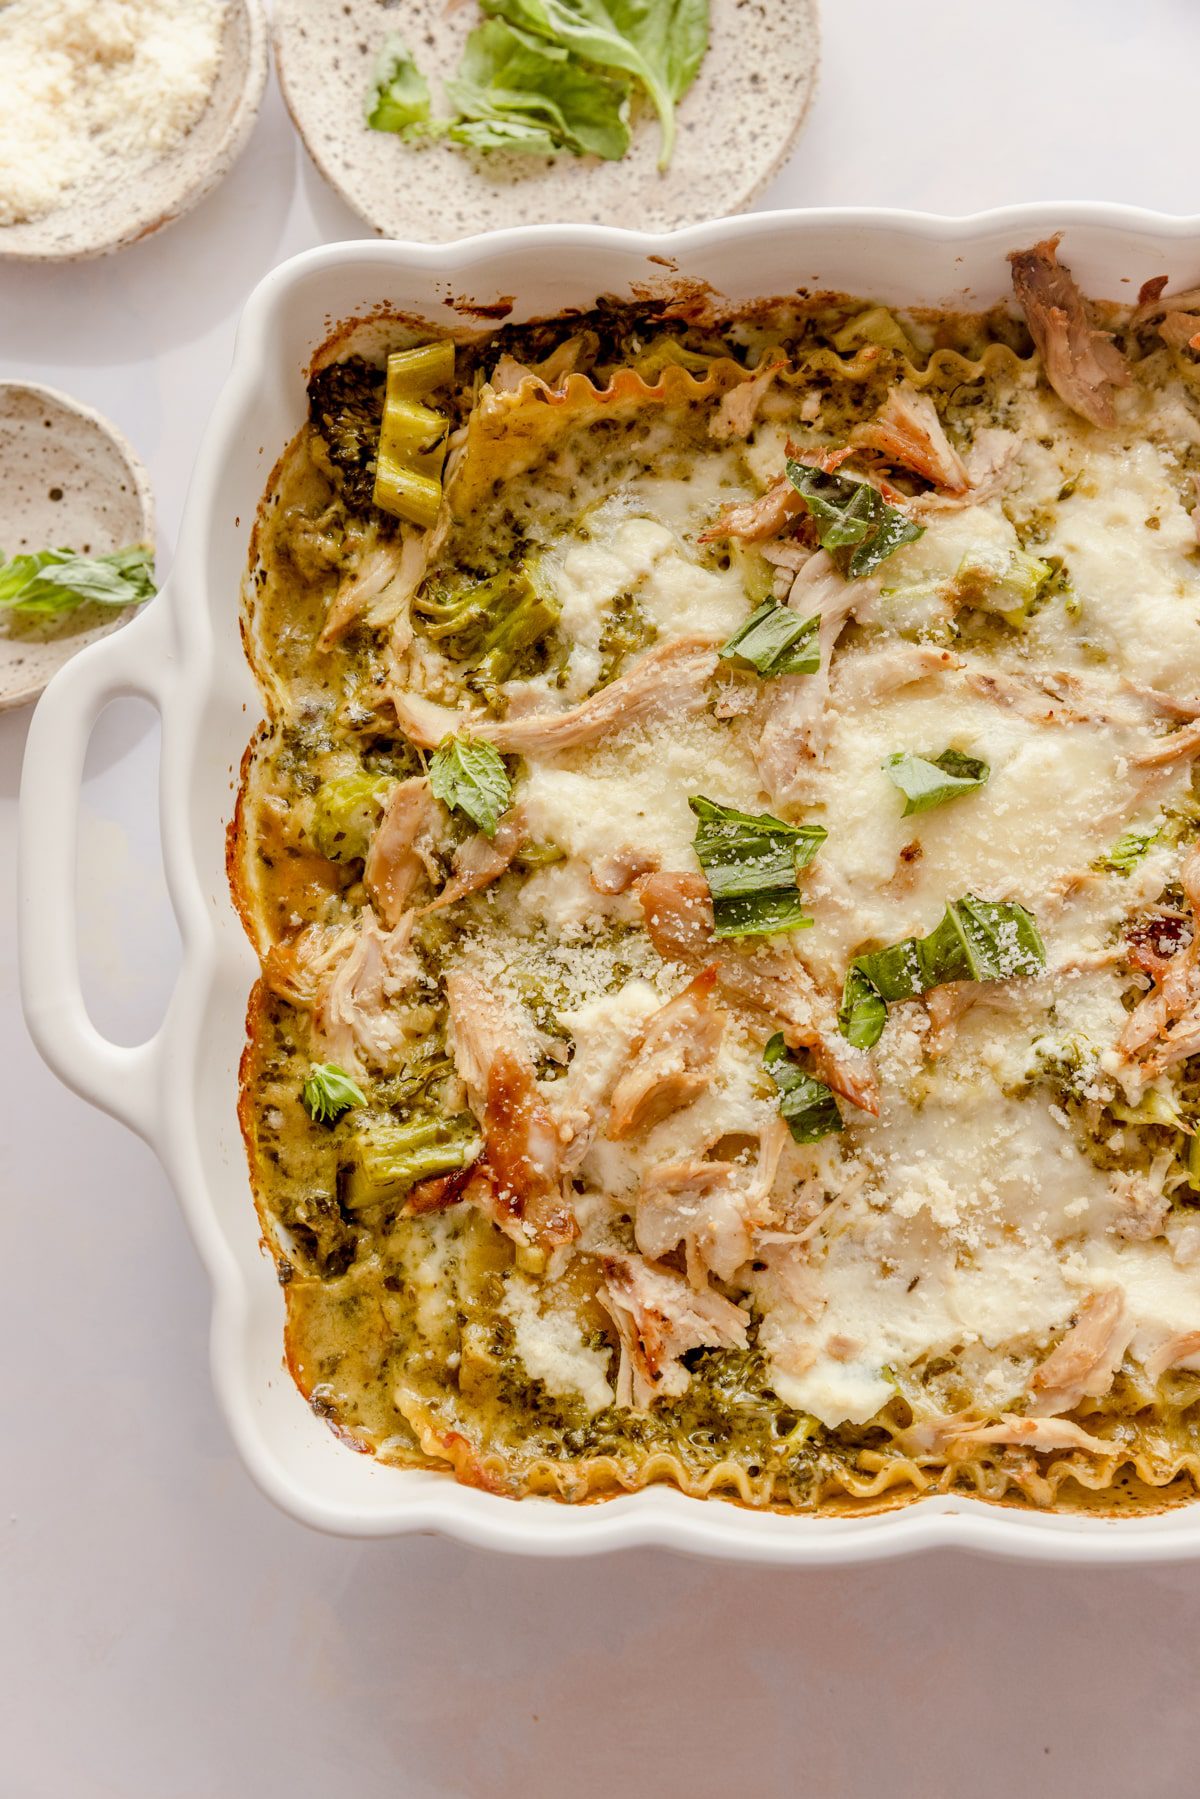 Pan of chicken & broccoli lasagna.